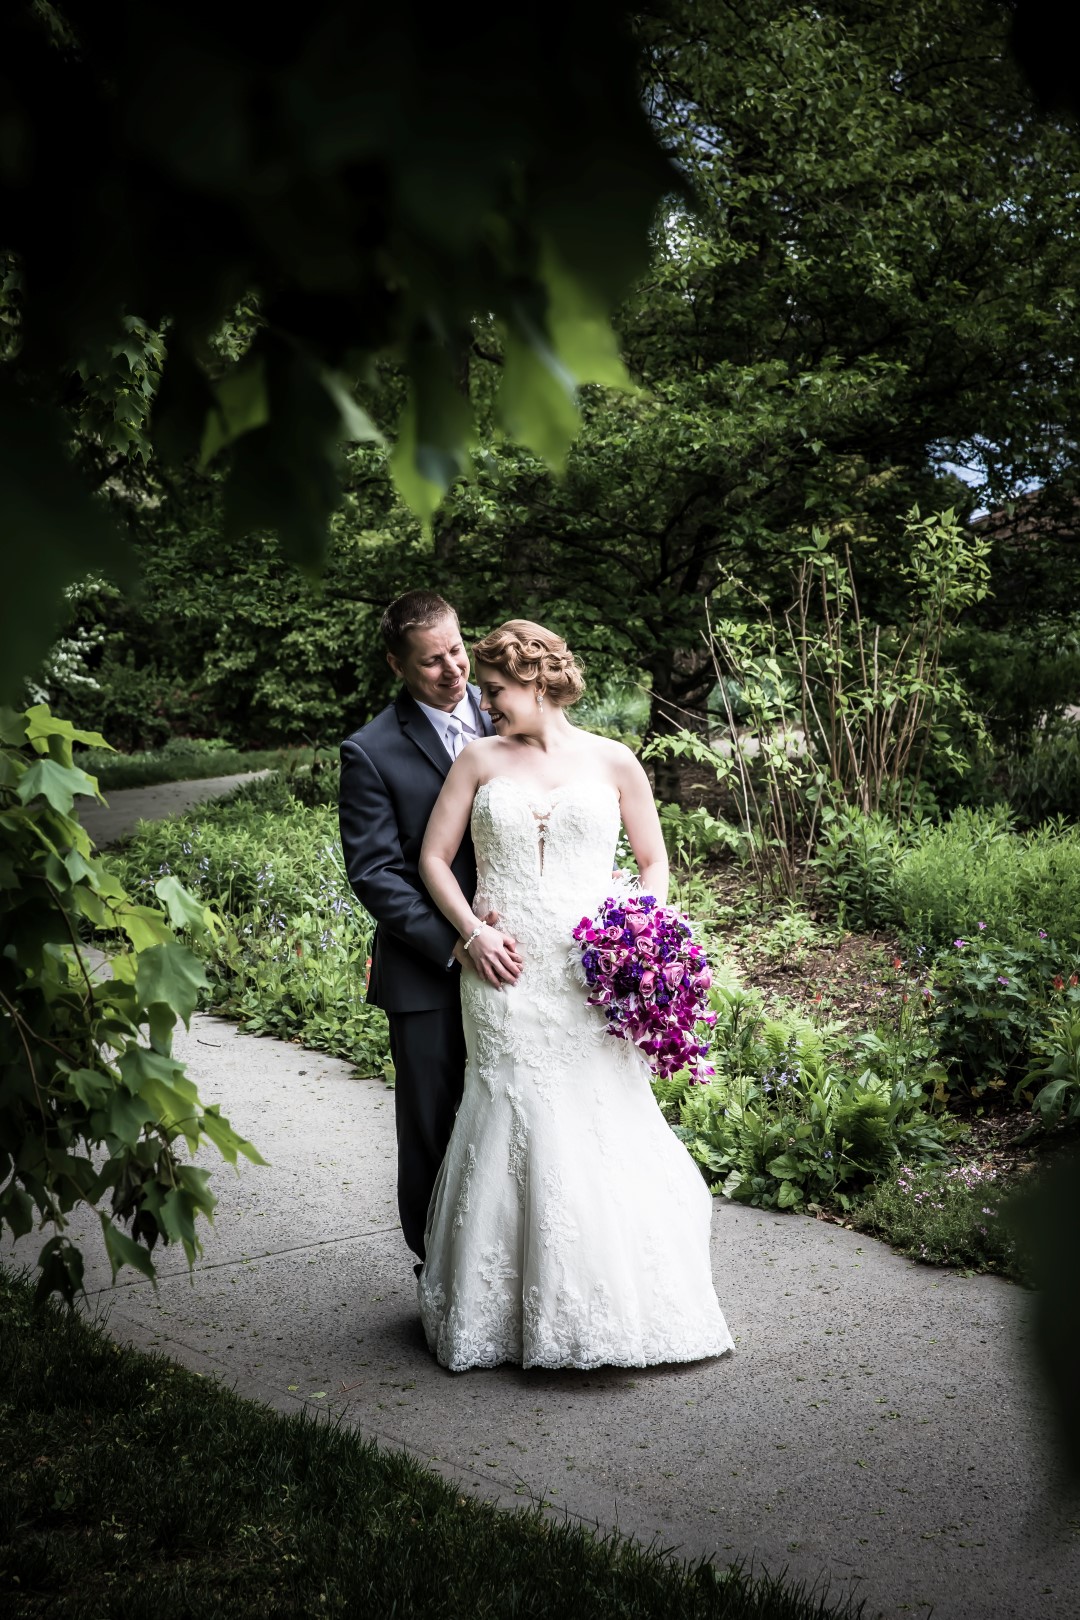 Andrew + Erin - wctmphotography | Moody wedding photography, Indoor wedding  photos, Wedding picture poses